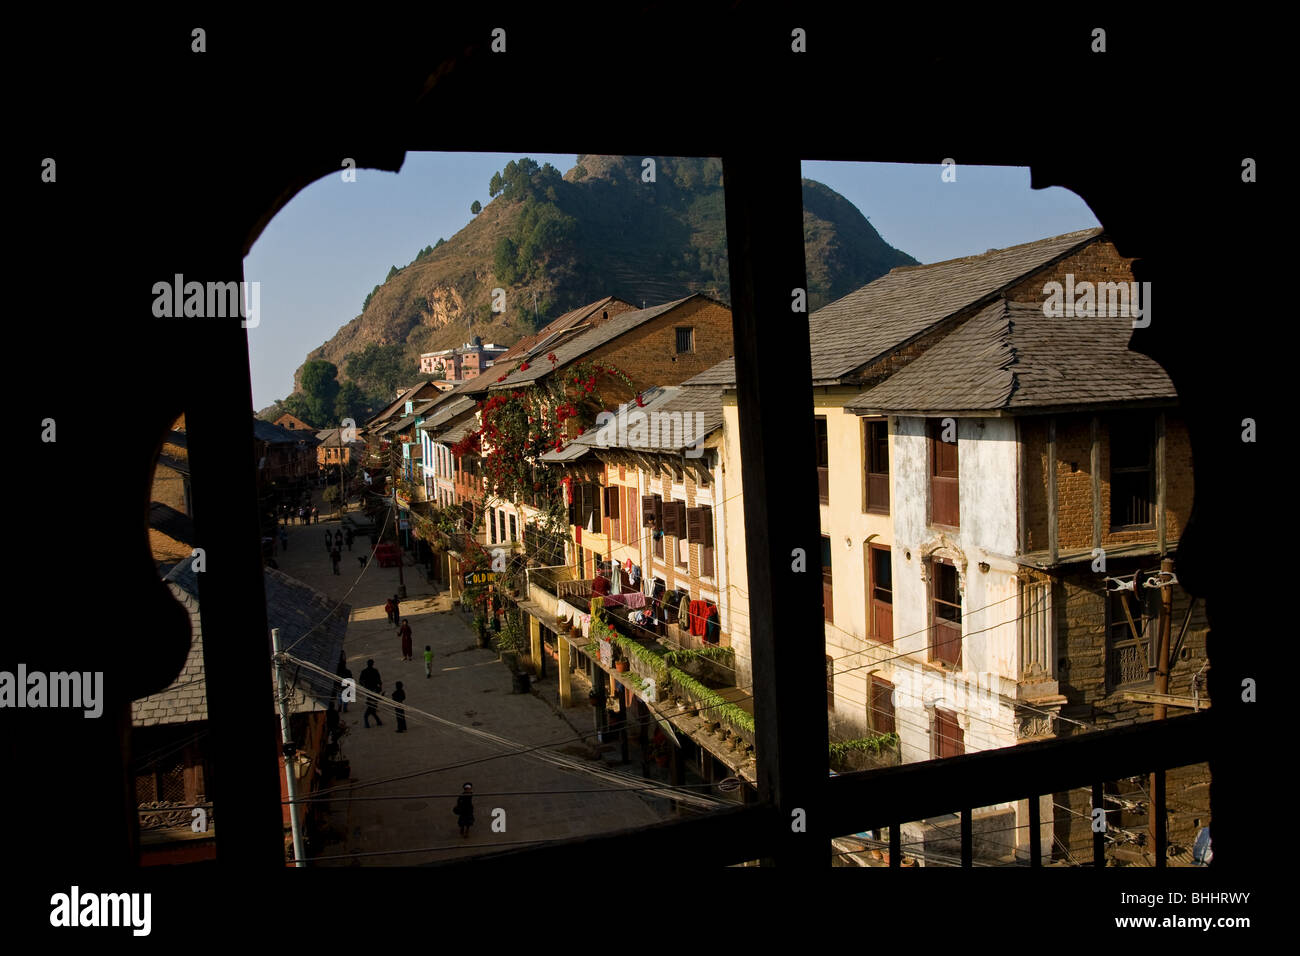 High Street von der traditionellen nepalesischen Dorf Bandipur befindet sich in den Ausläufern des Himalaya in Nepal. Stockfoto